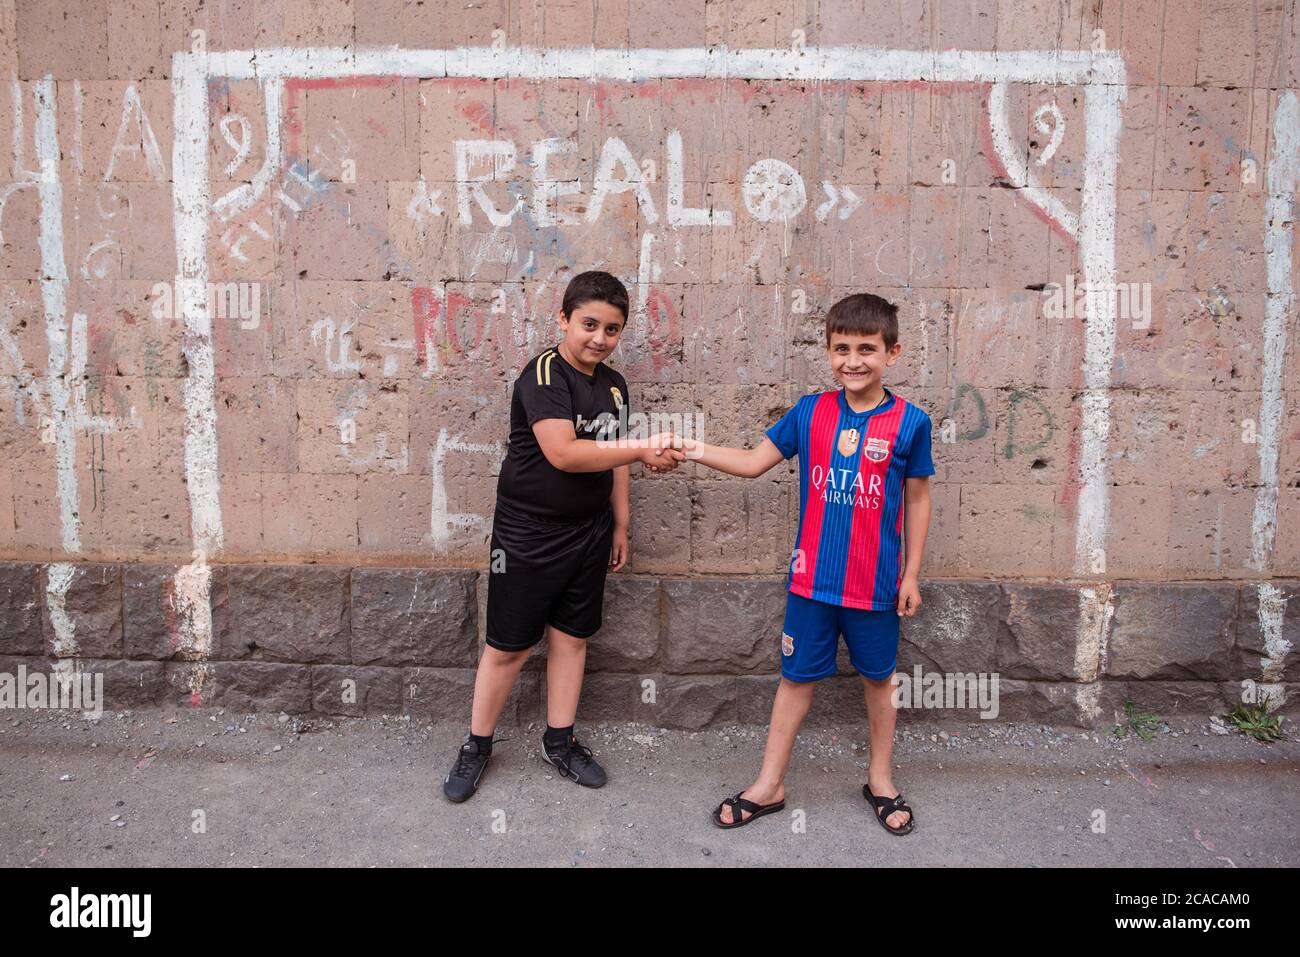 Alaverdi / Arménie - 20 juillet 2019: Amis enfants avec des chemises des équipes rivales Real Madrid et FC Barcelone posant devant le but de football peint sur le mur Banque D'Images